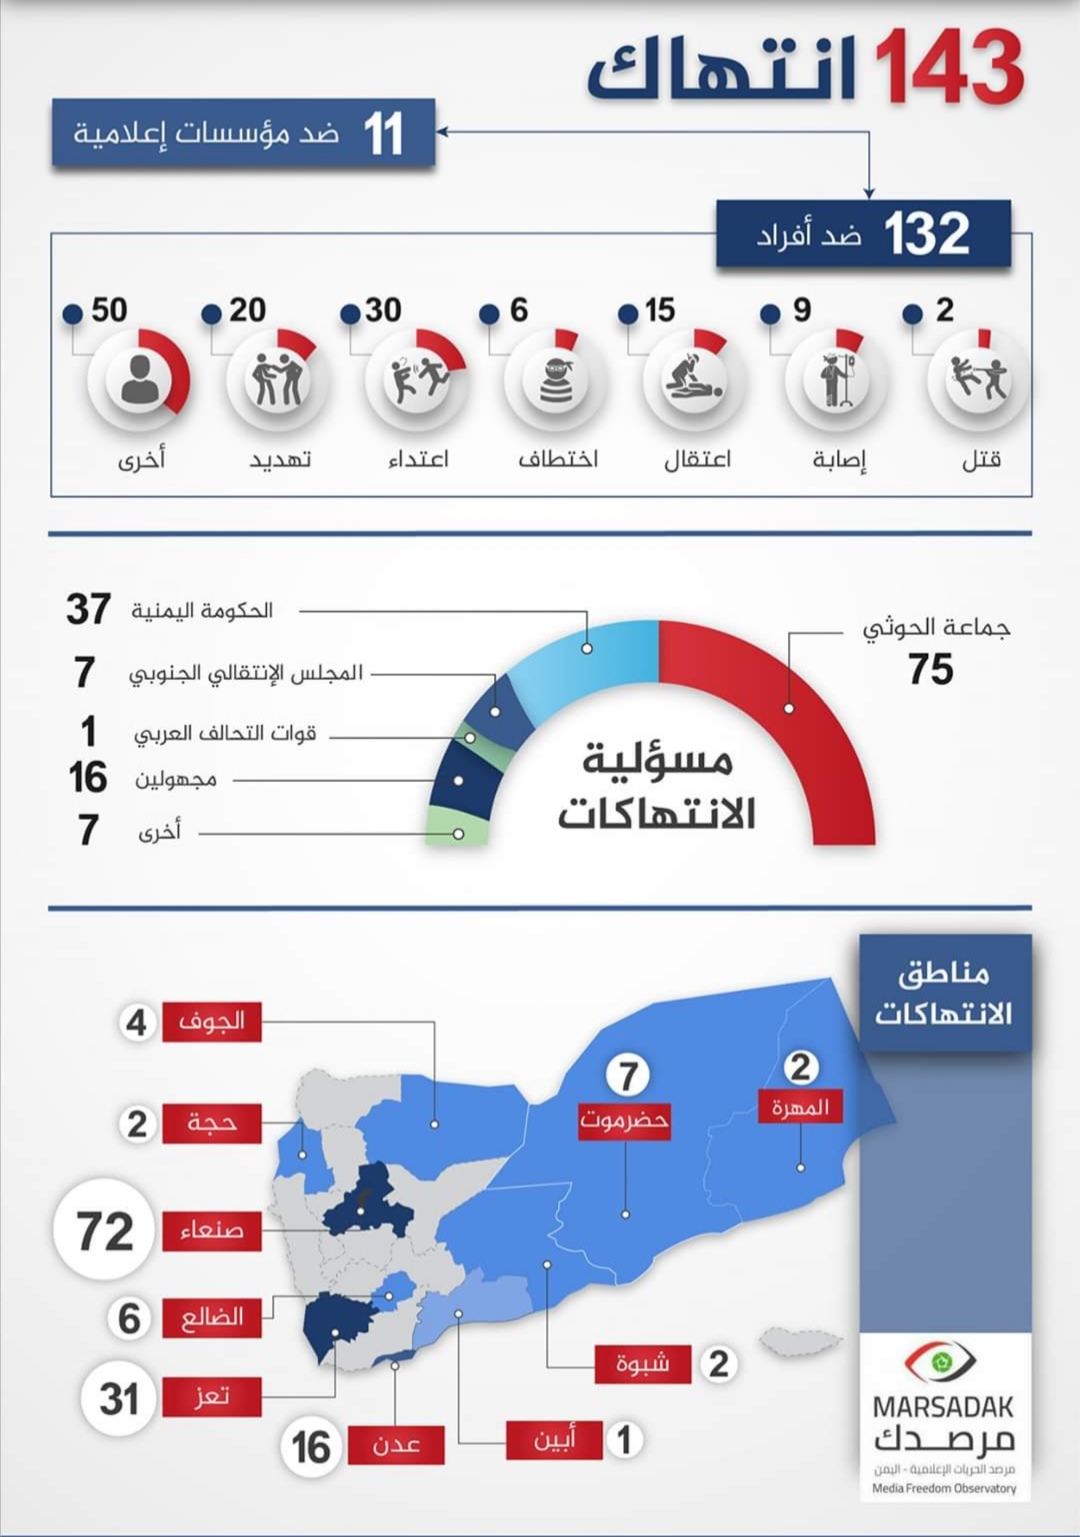 143 انتهاكًا ضد الحريات الإعلامية خلال 2019 والحوثيون في الصدارة